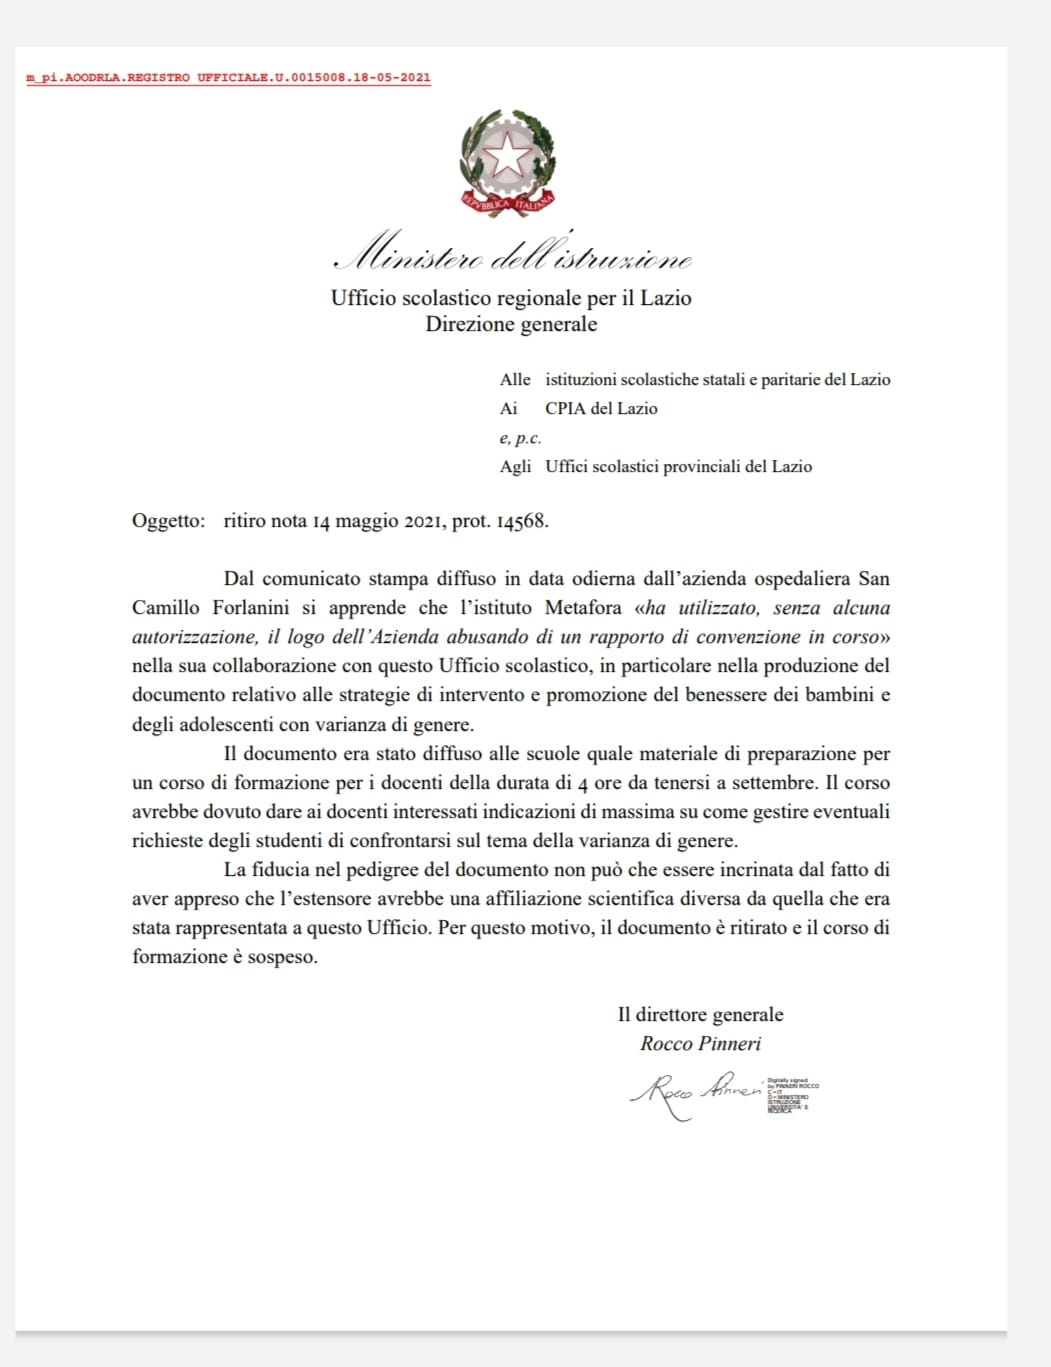 FLASH – L’Ufficio scolastico regionale del Lazio ritira le linee guida Gender 1